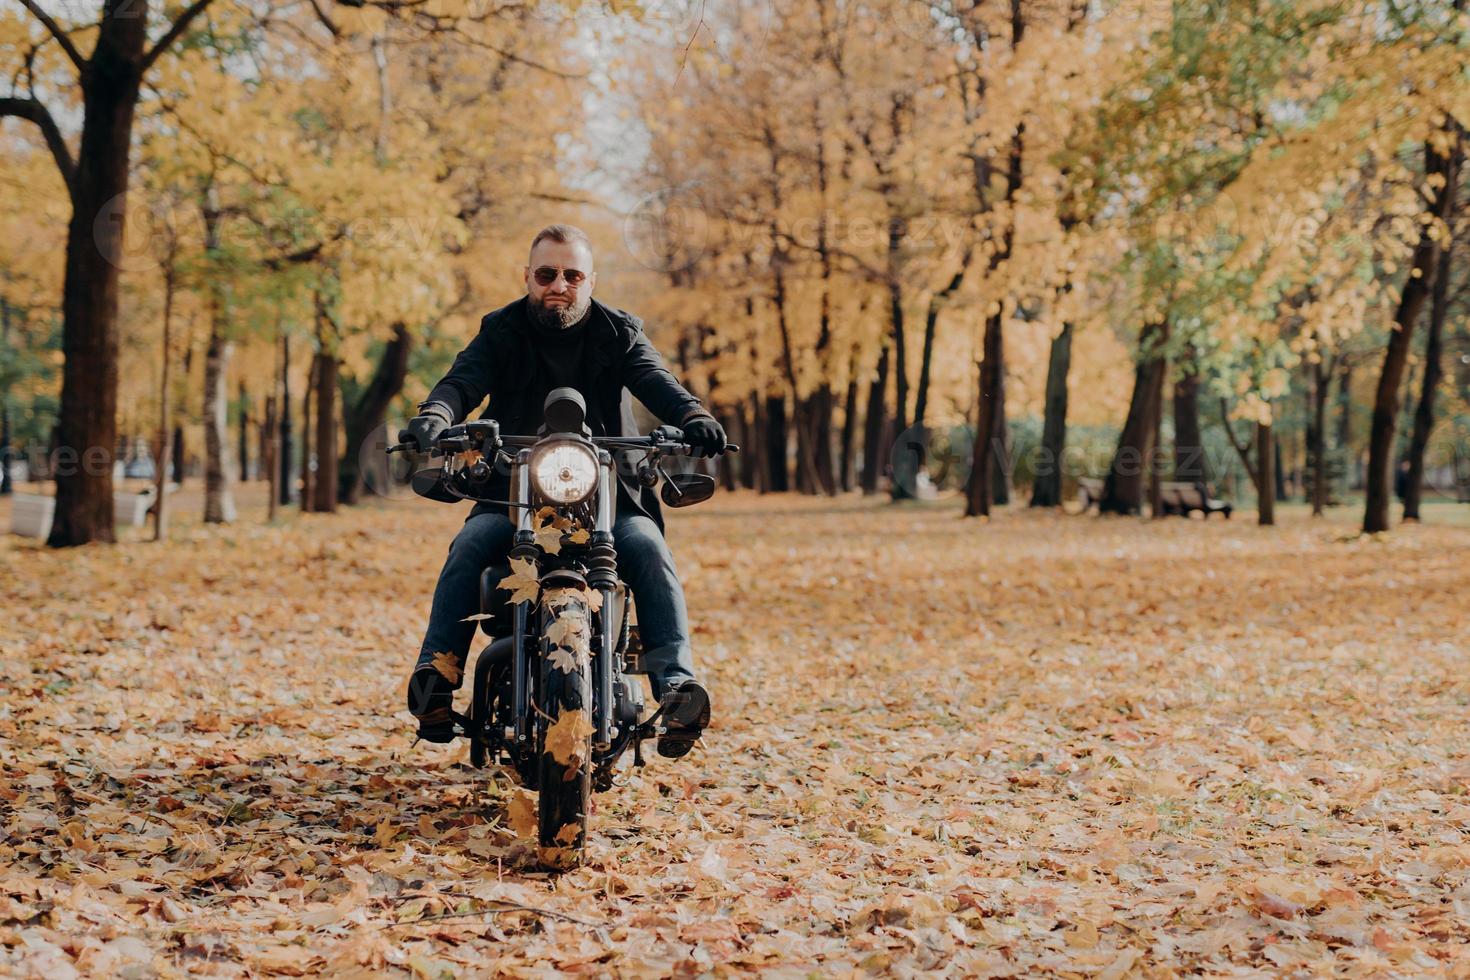 brutale professionele mannelijke motorrijder rijdt op de fiets, draagt een zonnebril, handschoenen en een zwarte jas, heeft een rit door het herfstpark, een prachtig landschap op de achtergrond met gele bomen en gevallen bladeren rondom foto